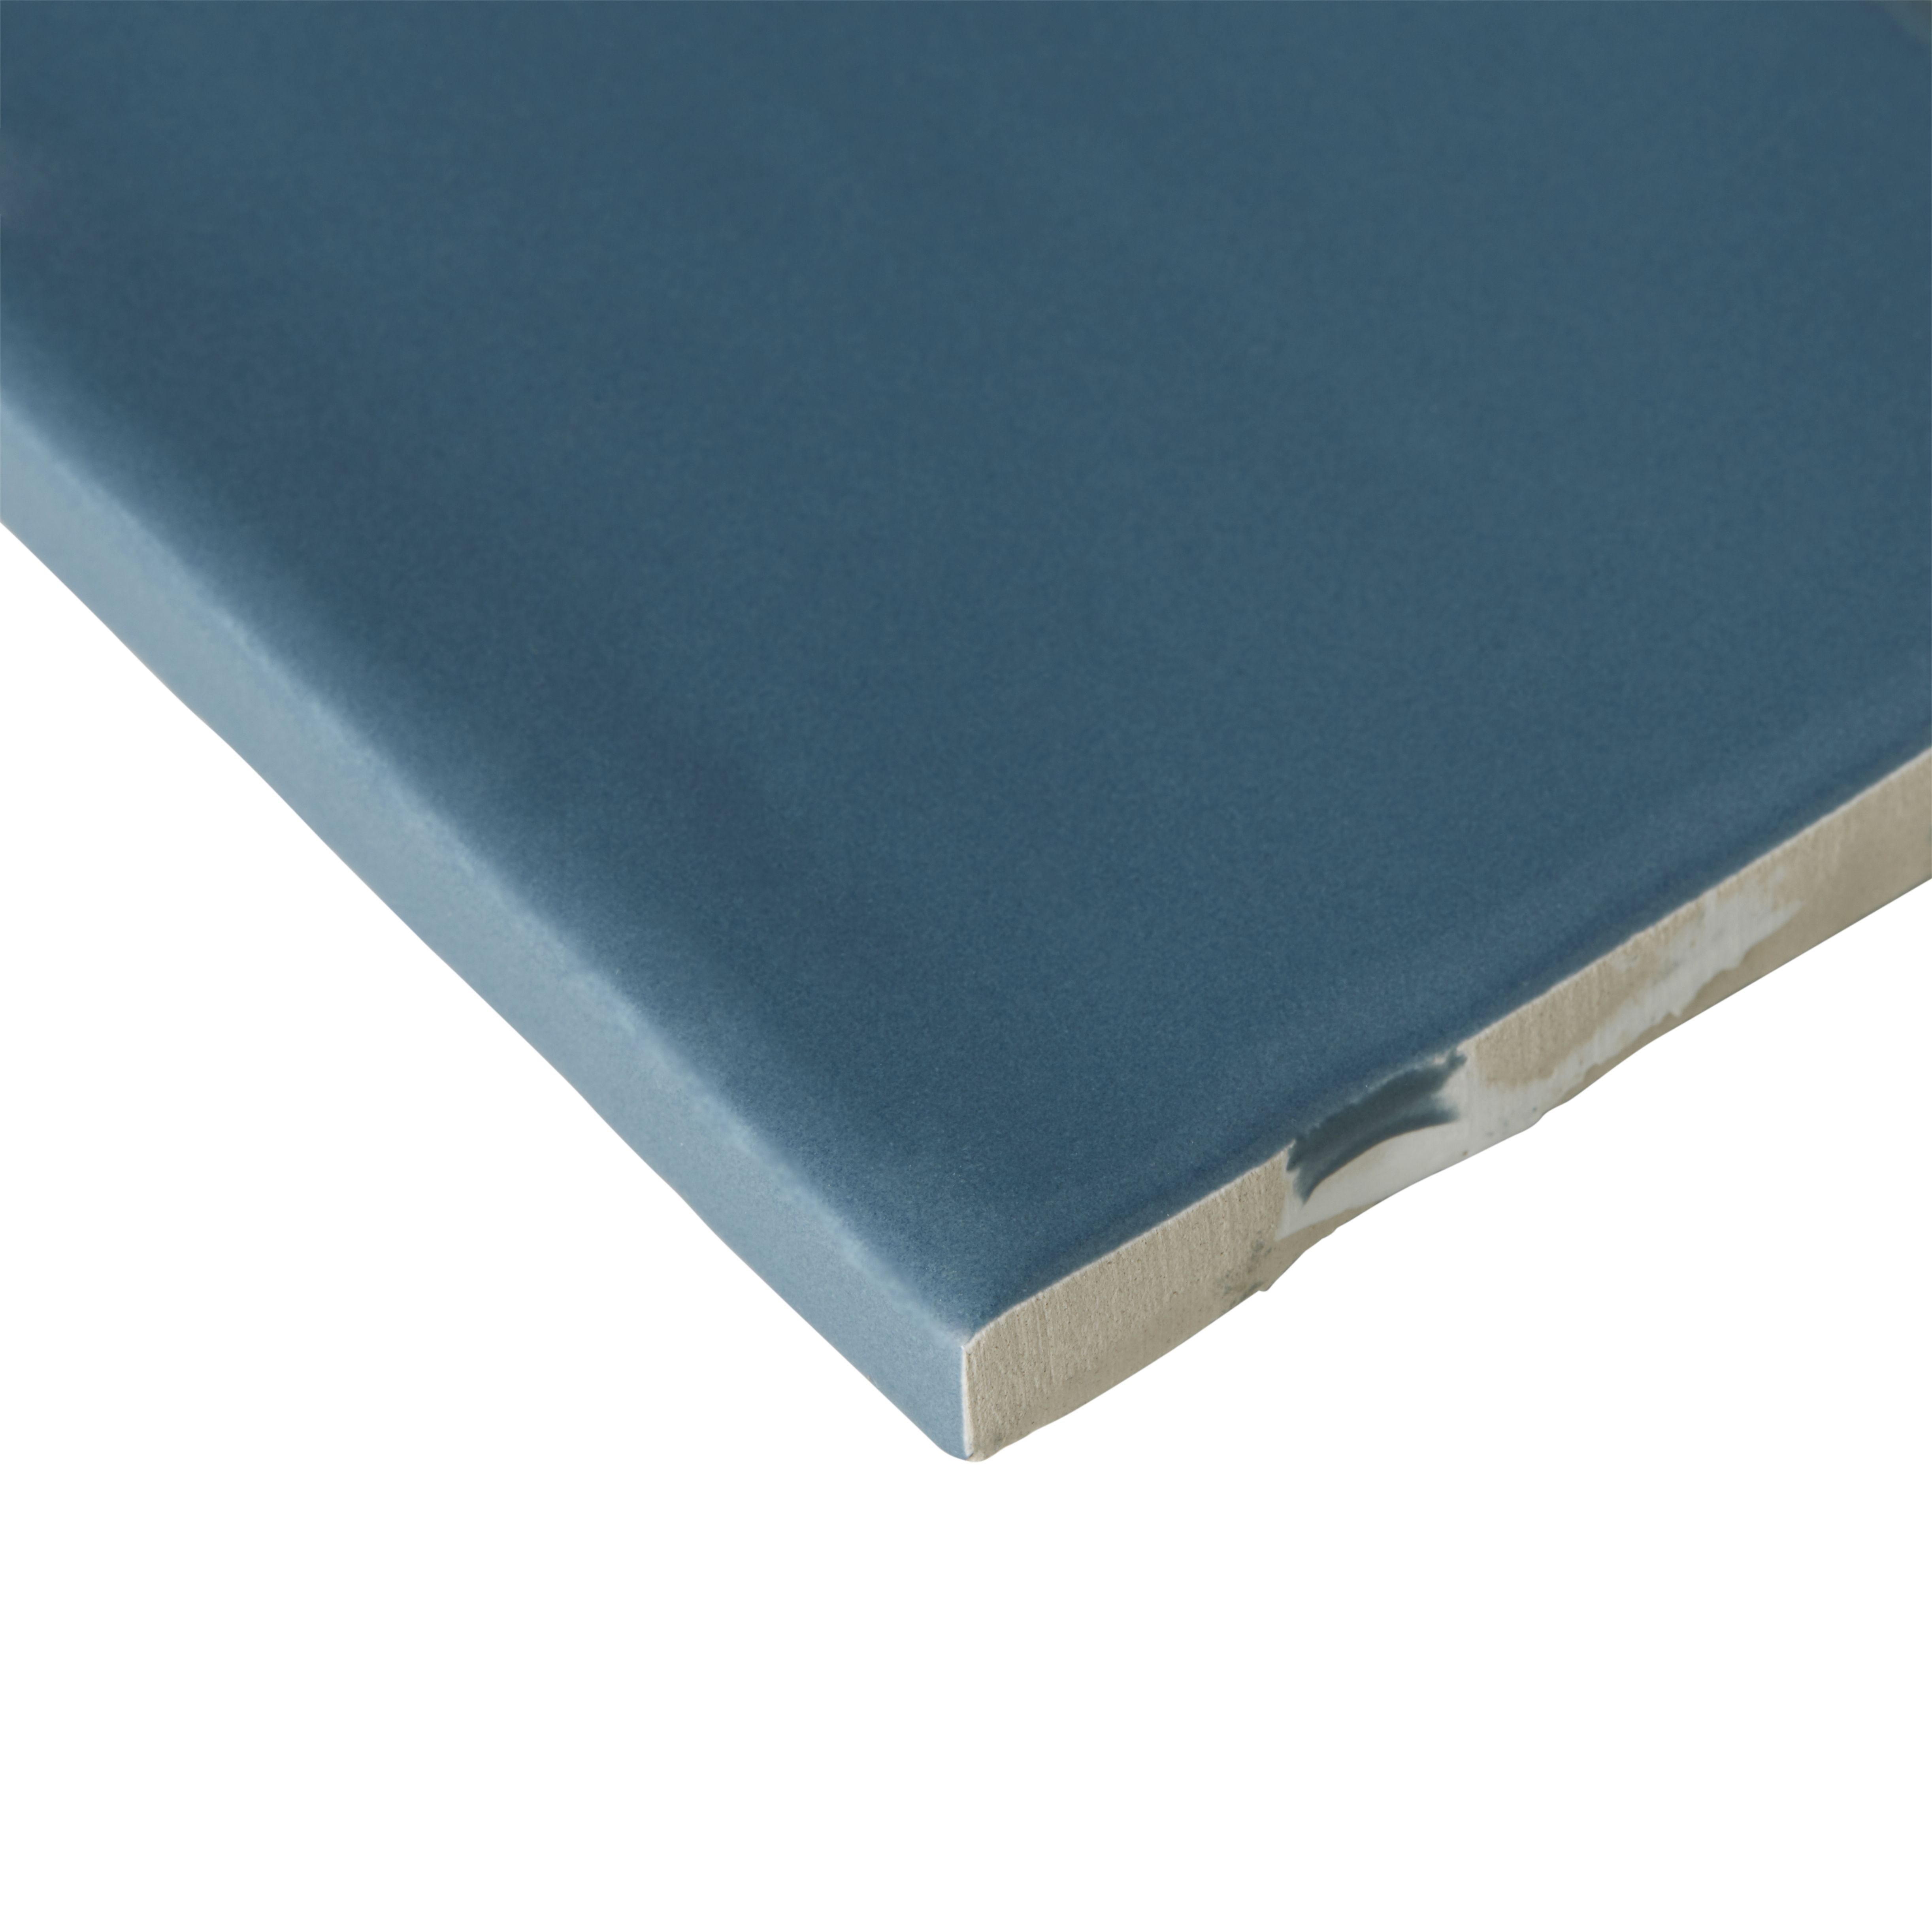 Vernisse Mallard blue Gloss Plain Ceramic Wall Tile, Pack of 41, (L)301mm (W)75.4mm